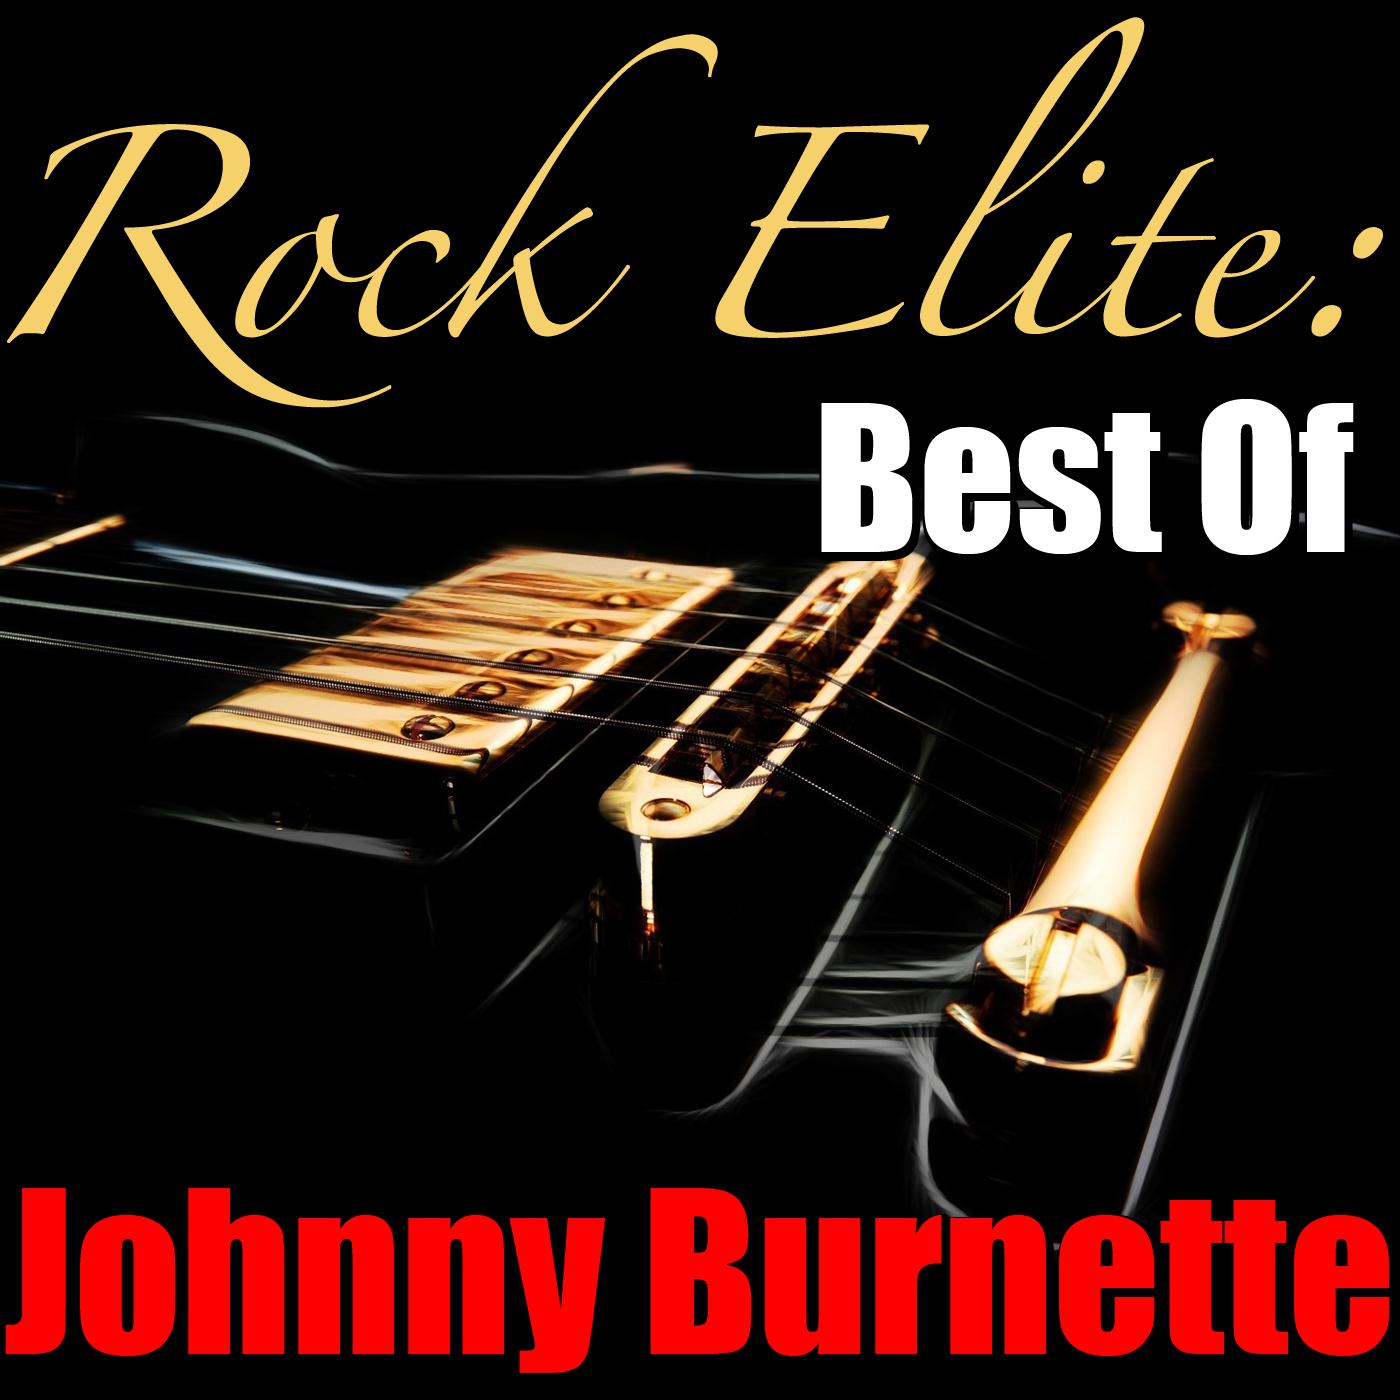 Rock Elite: Best Of Johnny Burnette